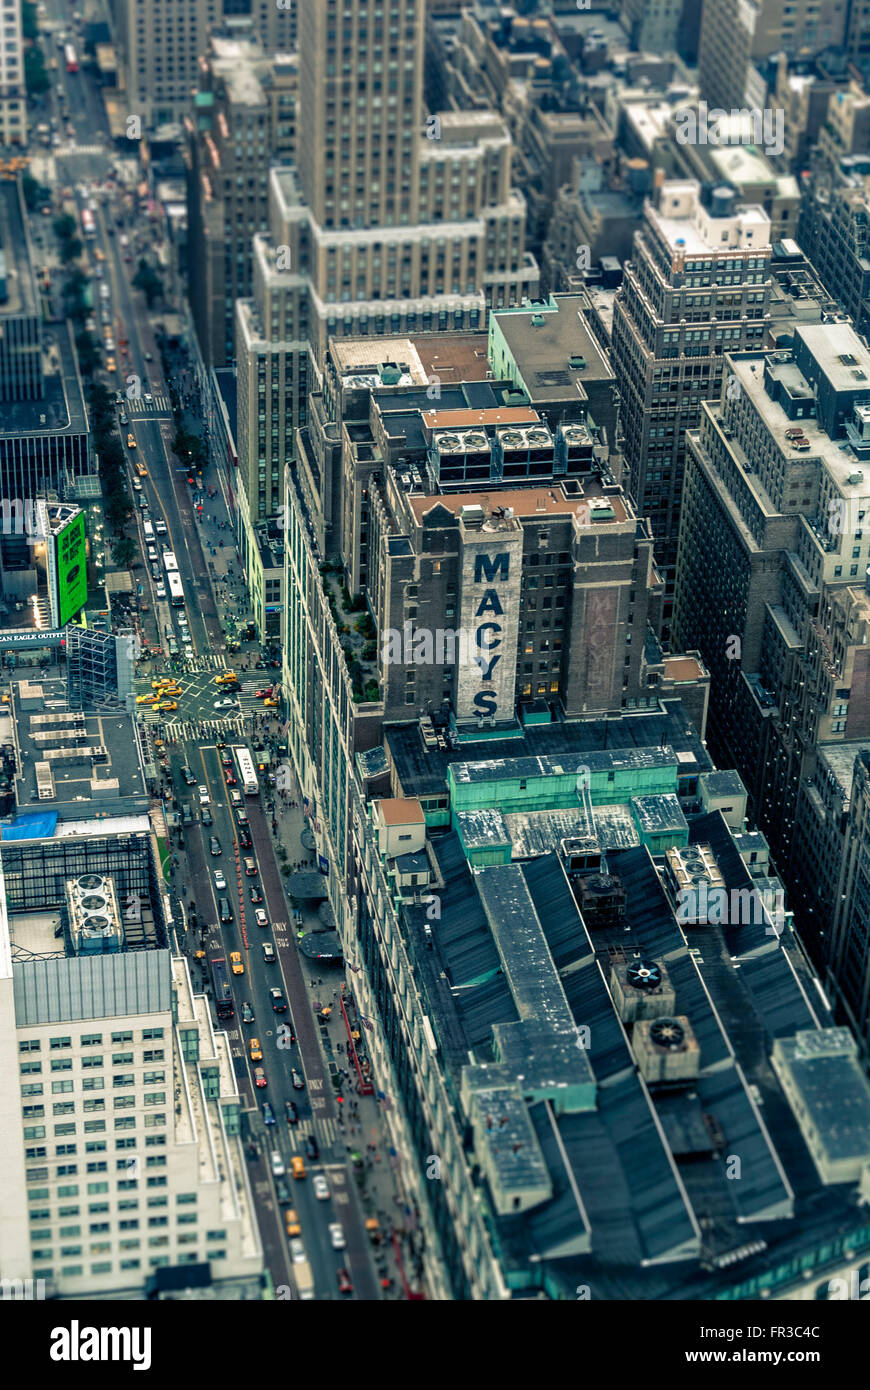 Grande magazzino Macy's, New York City. Vista aerea dall'Empire state Building, USA. Foto Stock